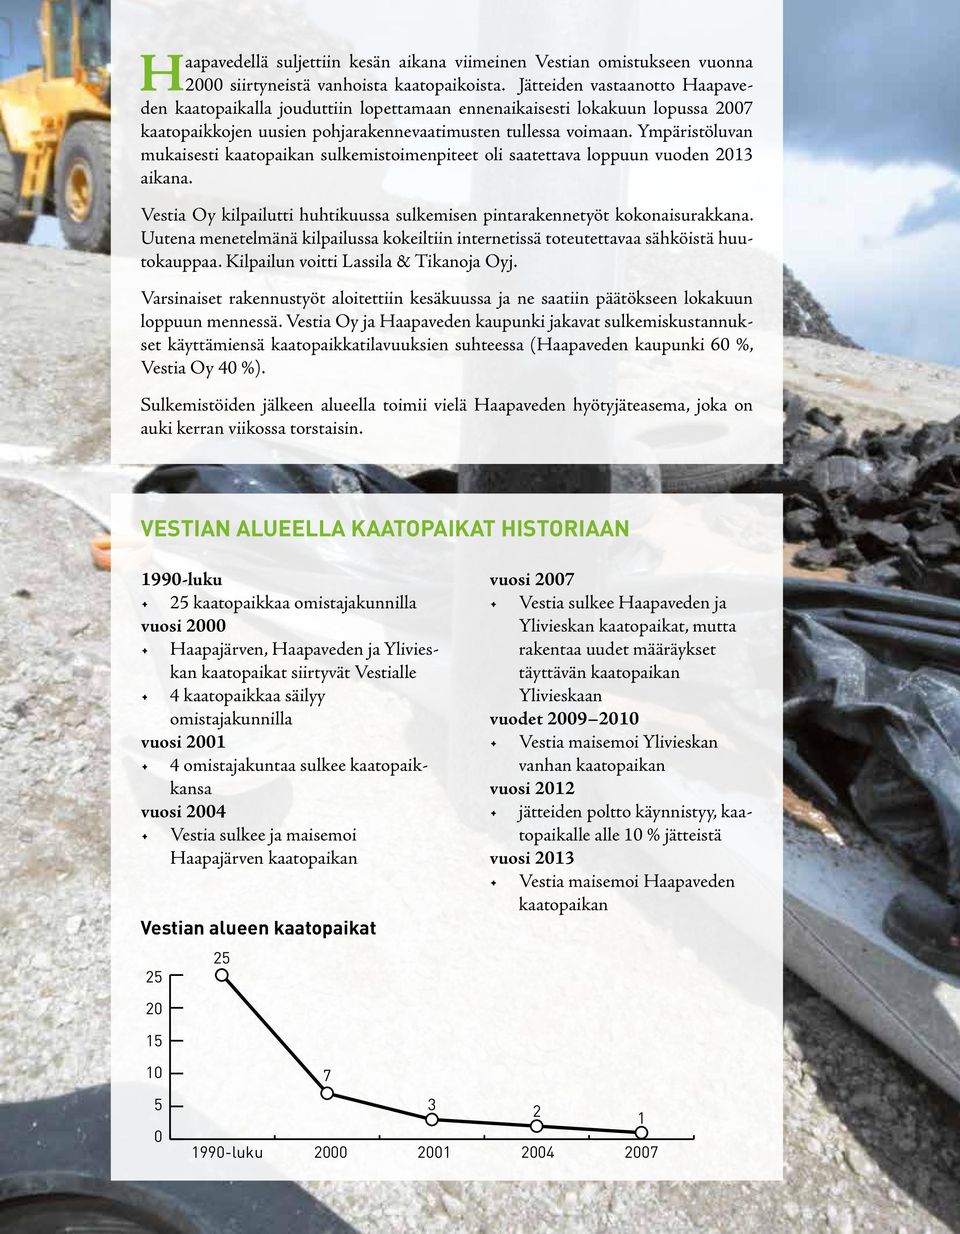 Ympäristöluvan mukaisesti kaatopaikan sulkemistoimenpiteet oli saatettava loppuun vuoden 2013 aikana. Vestia Oy kilpailutti huhtikuussa sulkemisen pintarakennetyöt kokonaisurakkana.